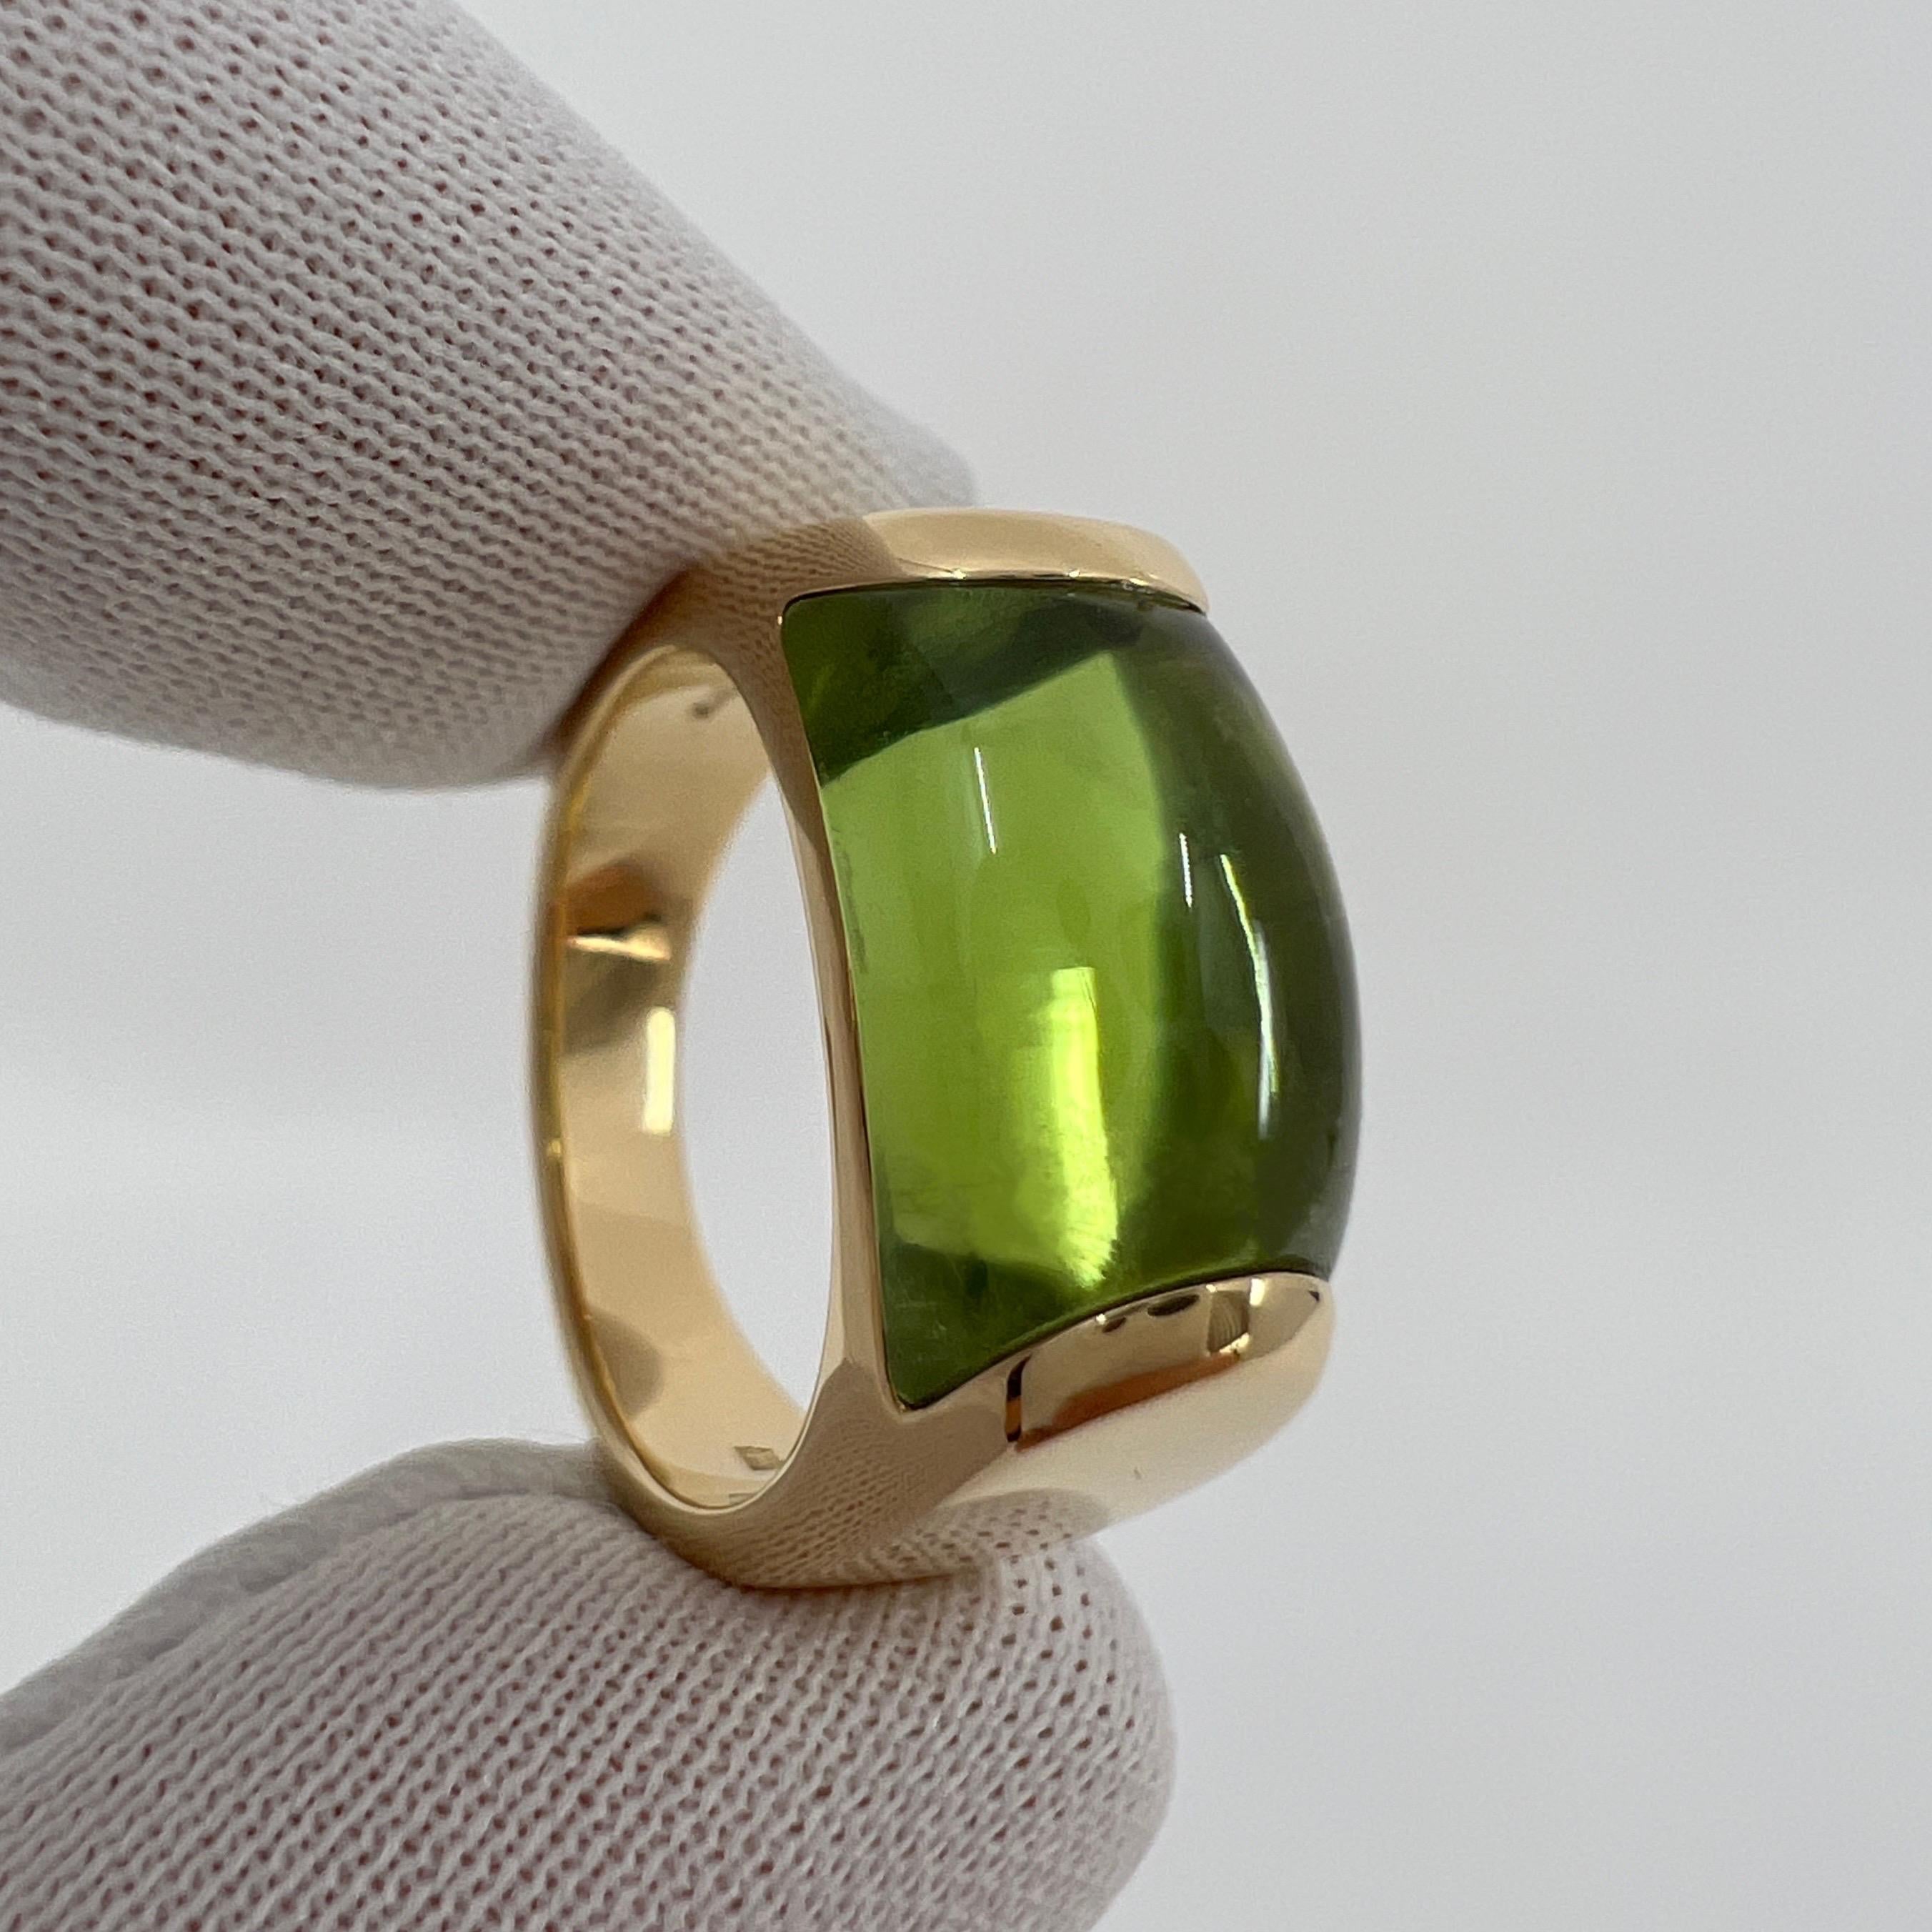 Rare Bvlgari Bulgari Tronchetto 18k Yellow Gold Green Tourmaline Ring with Box 3